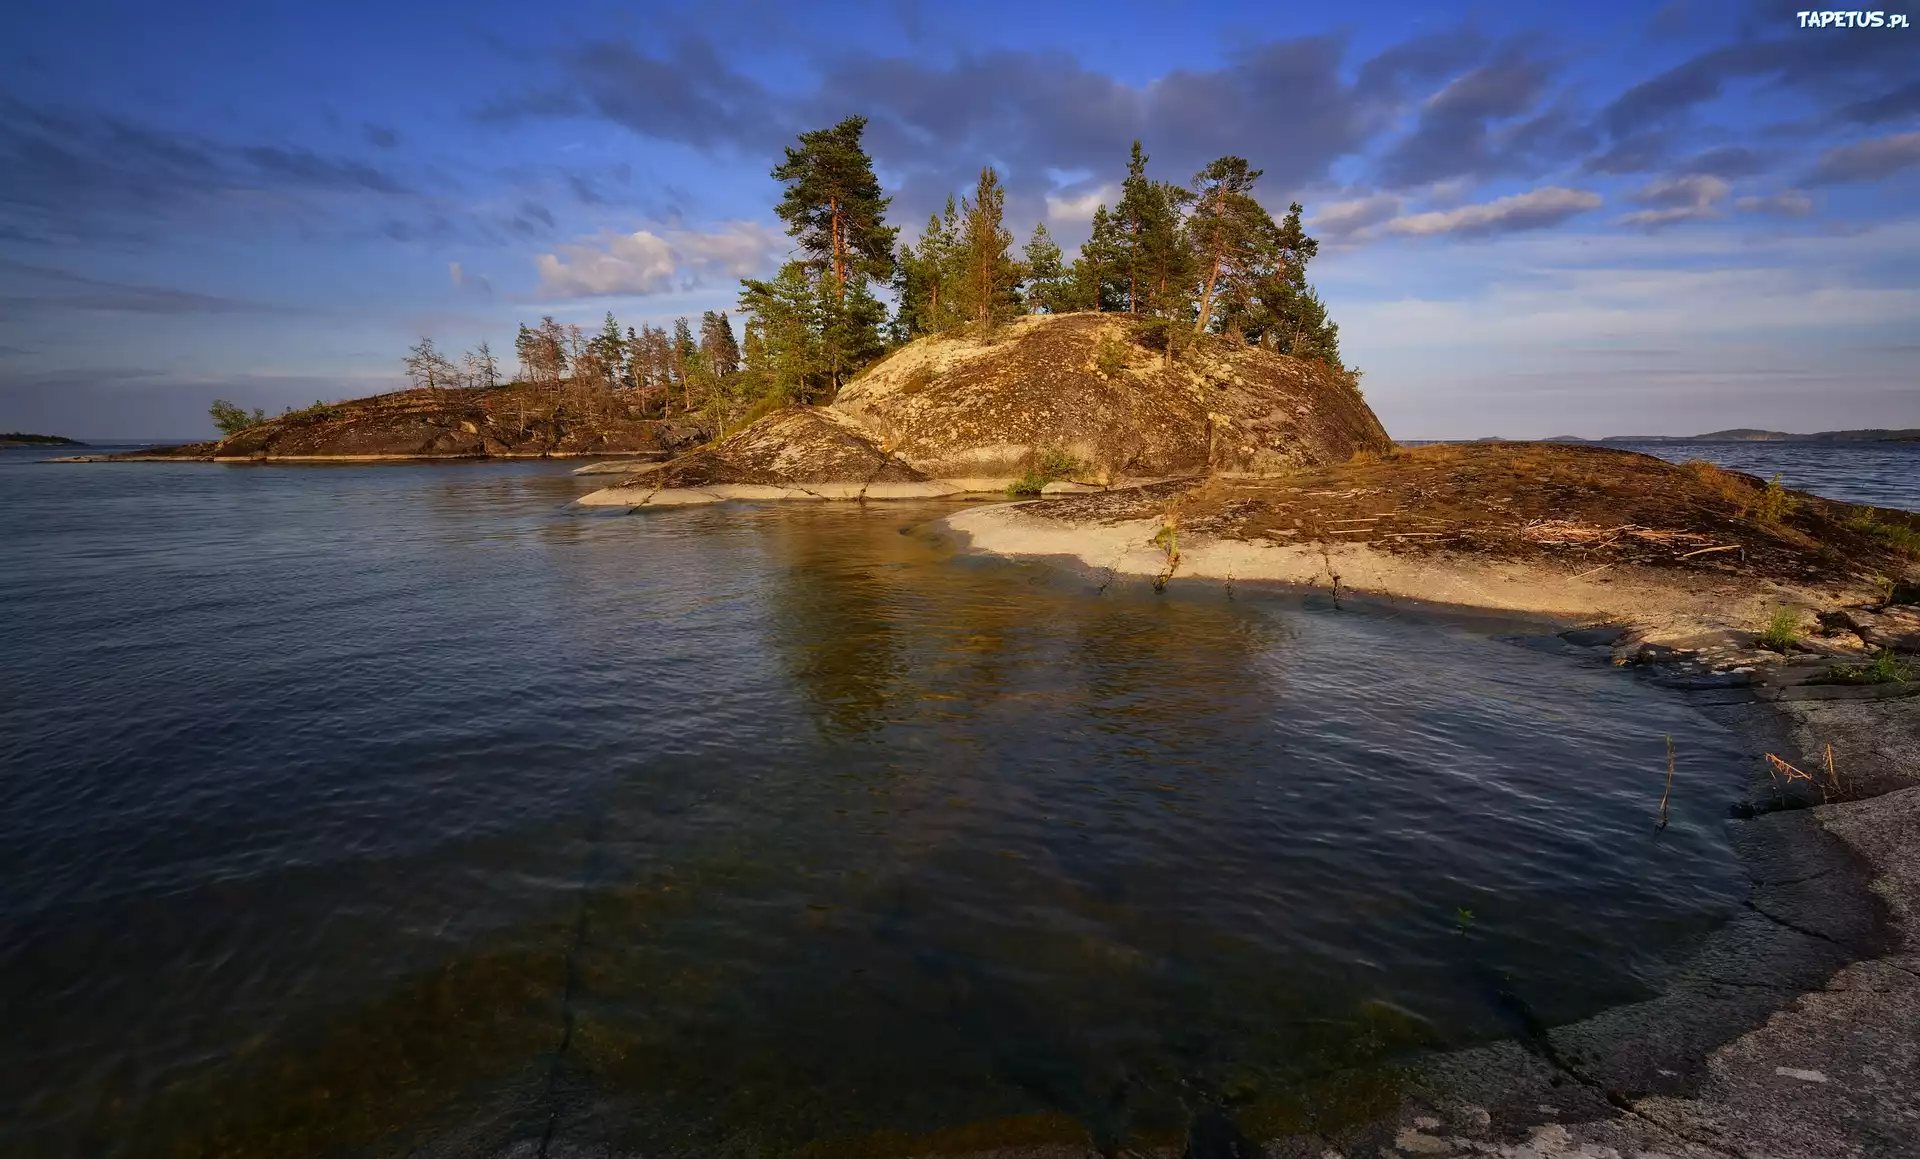 Jezioro Ładoga, Wysepka, Skały, Drzewa, Karelia, Rosja